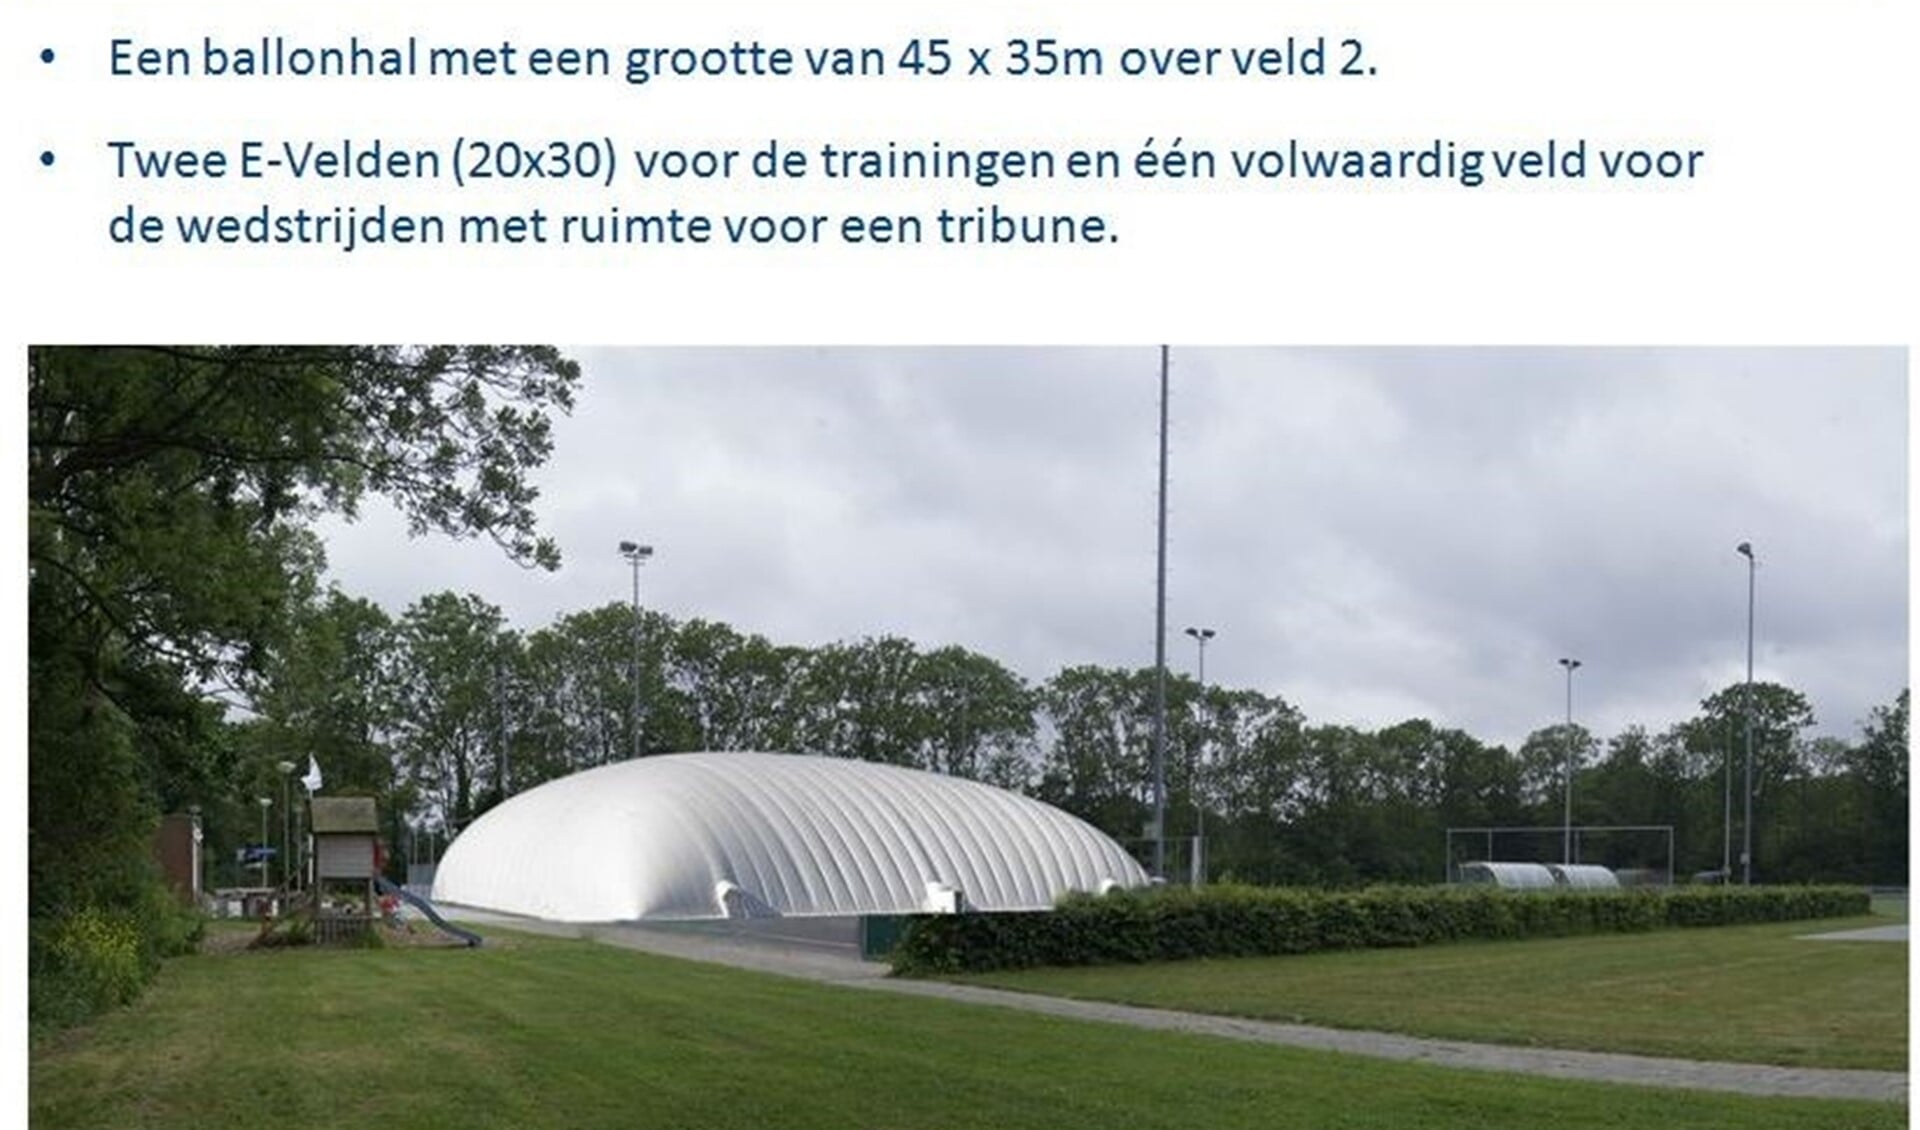 Handbalvereniging EHC opent een ballonhal, de EHC European Sports Dome, op Sportpark Westvliet (foto: pr EHC Bart Heidt).